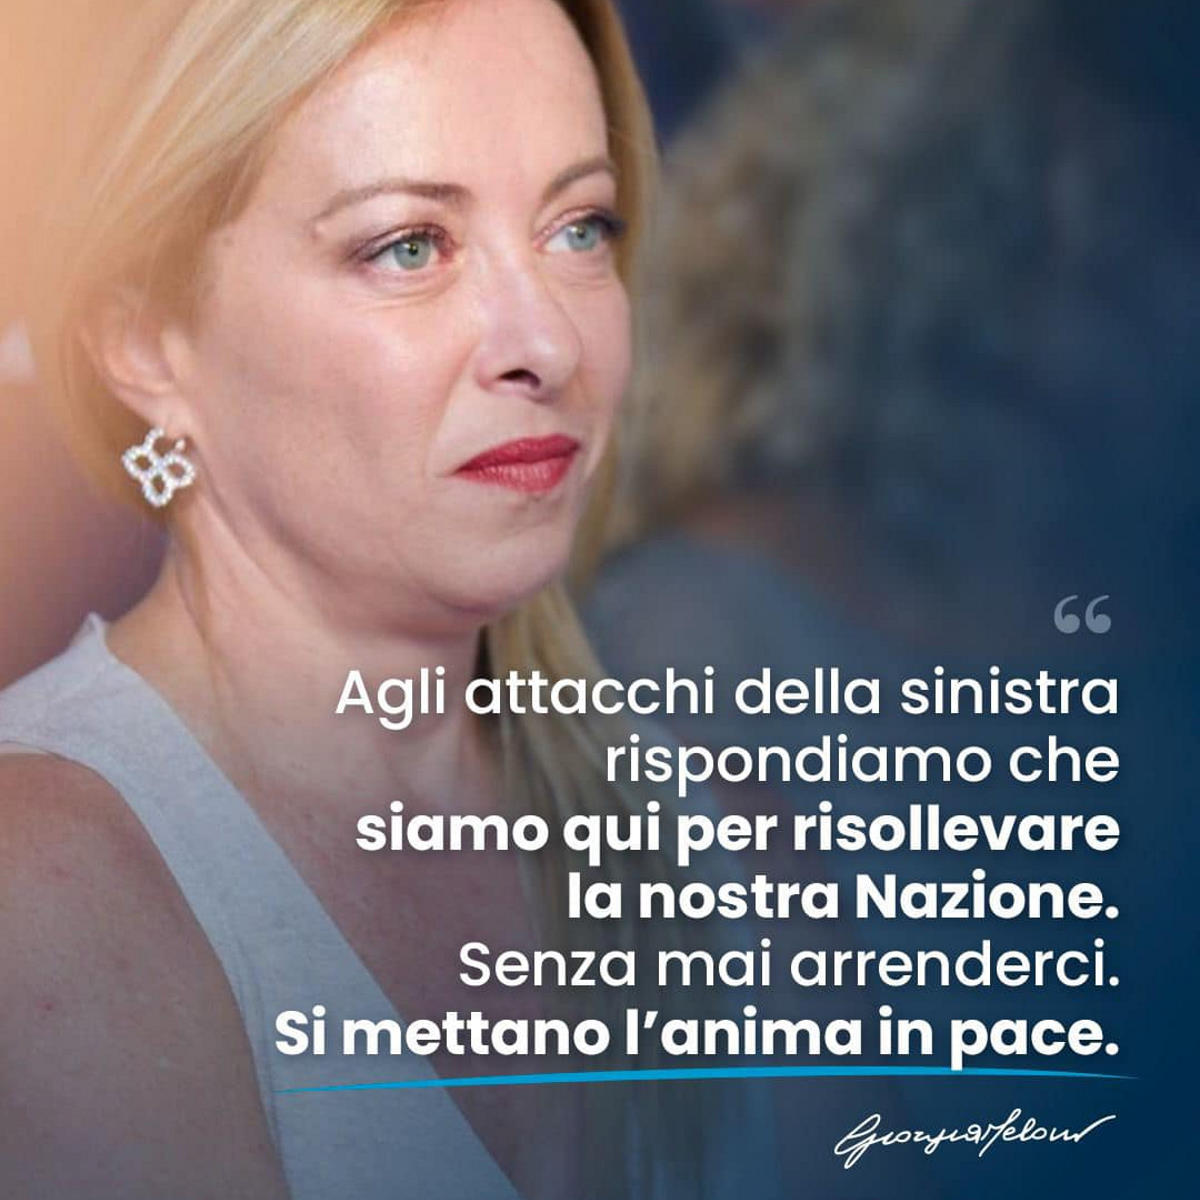 La sora Meloni, la risollevatrice della Nazione, dice che la sinistra insulta gli italiani... che l'hanno votata